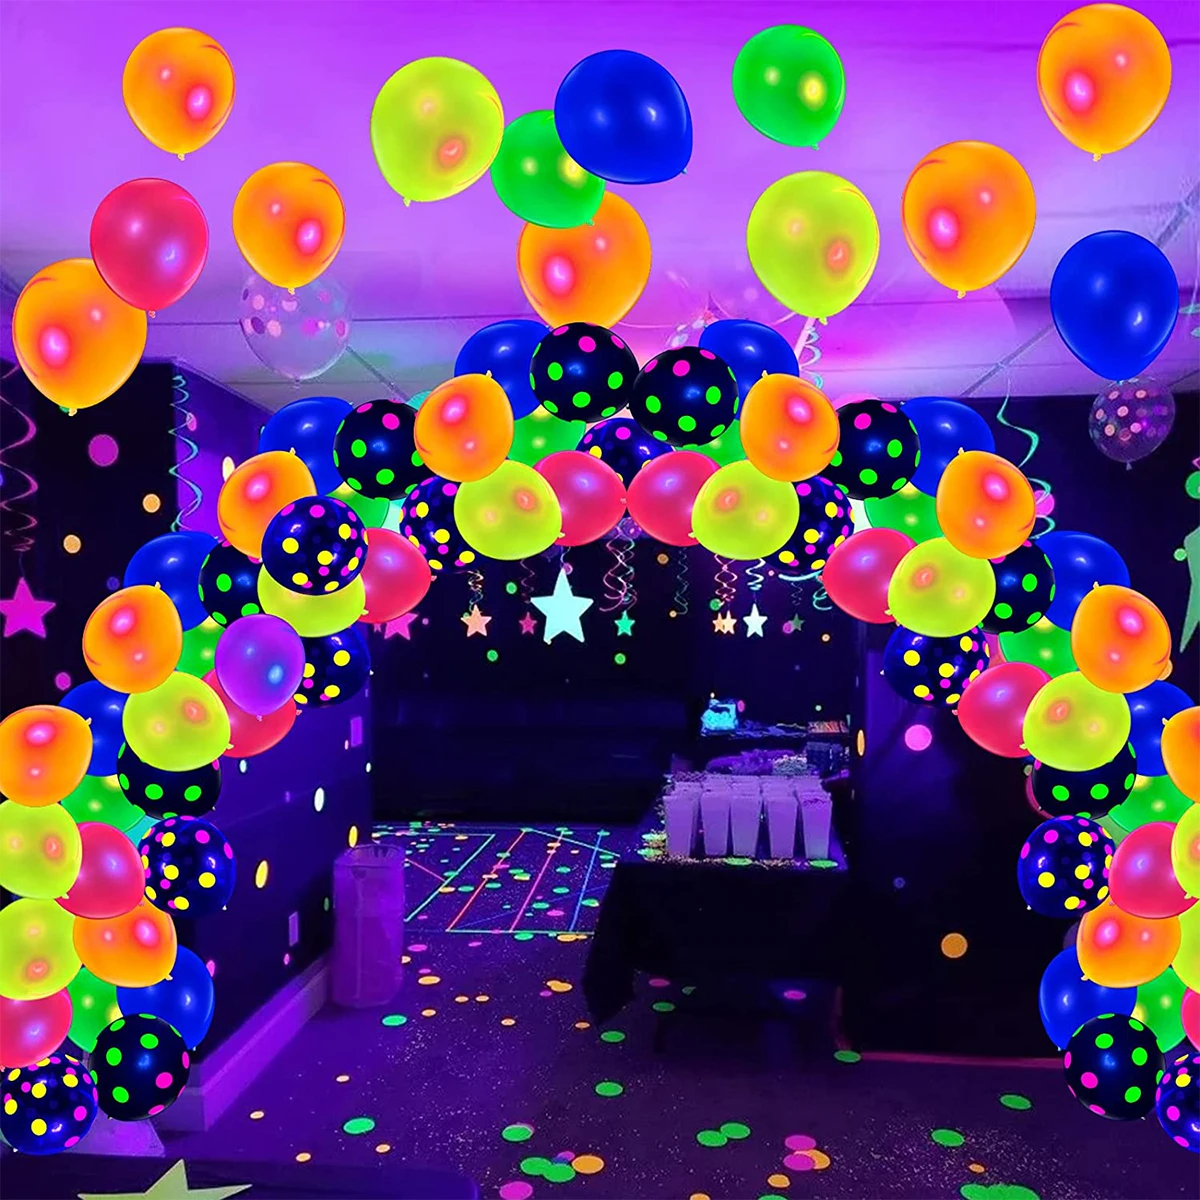 

Неоновые воздушные шары 90 шт., 12 дюймов, неоновые блестящие УФ-шары, многоразовые шарики в горошек, с подсветкой, зеркальный латексный шар, с подсветкой